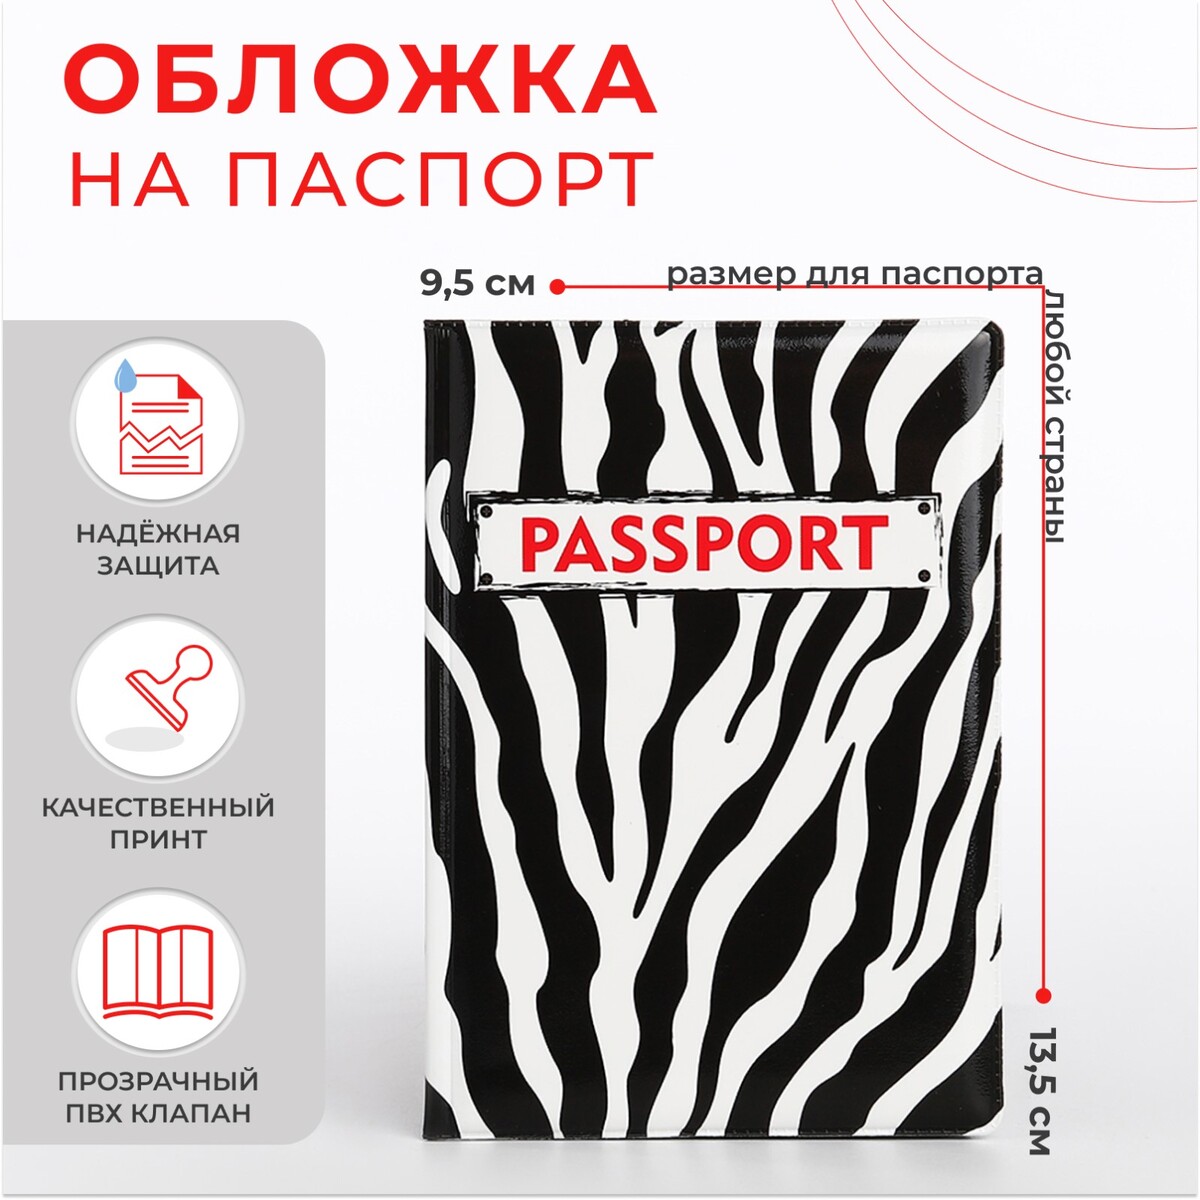 Обложка для паспорта, цвет черный/белый обложка для паспорта пвх оттенок кардинал